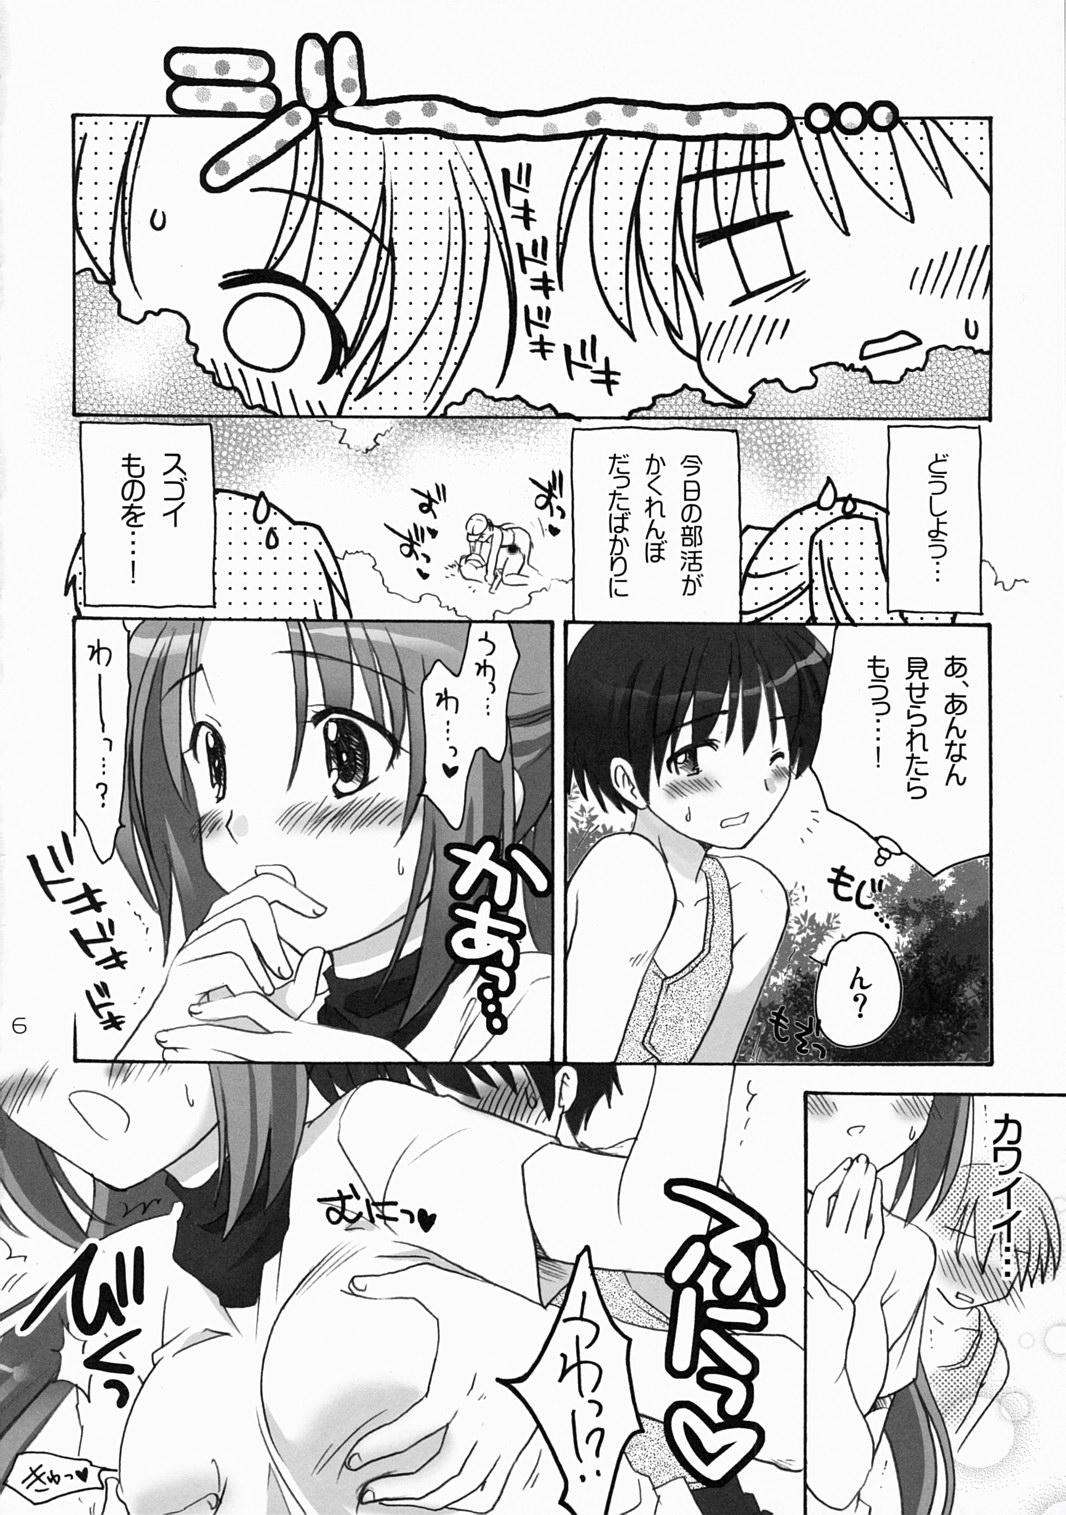 One Higurashi Urabon 2 - Higurashi no naku koro ni Perfect Butt - Page 5